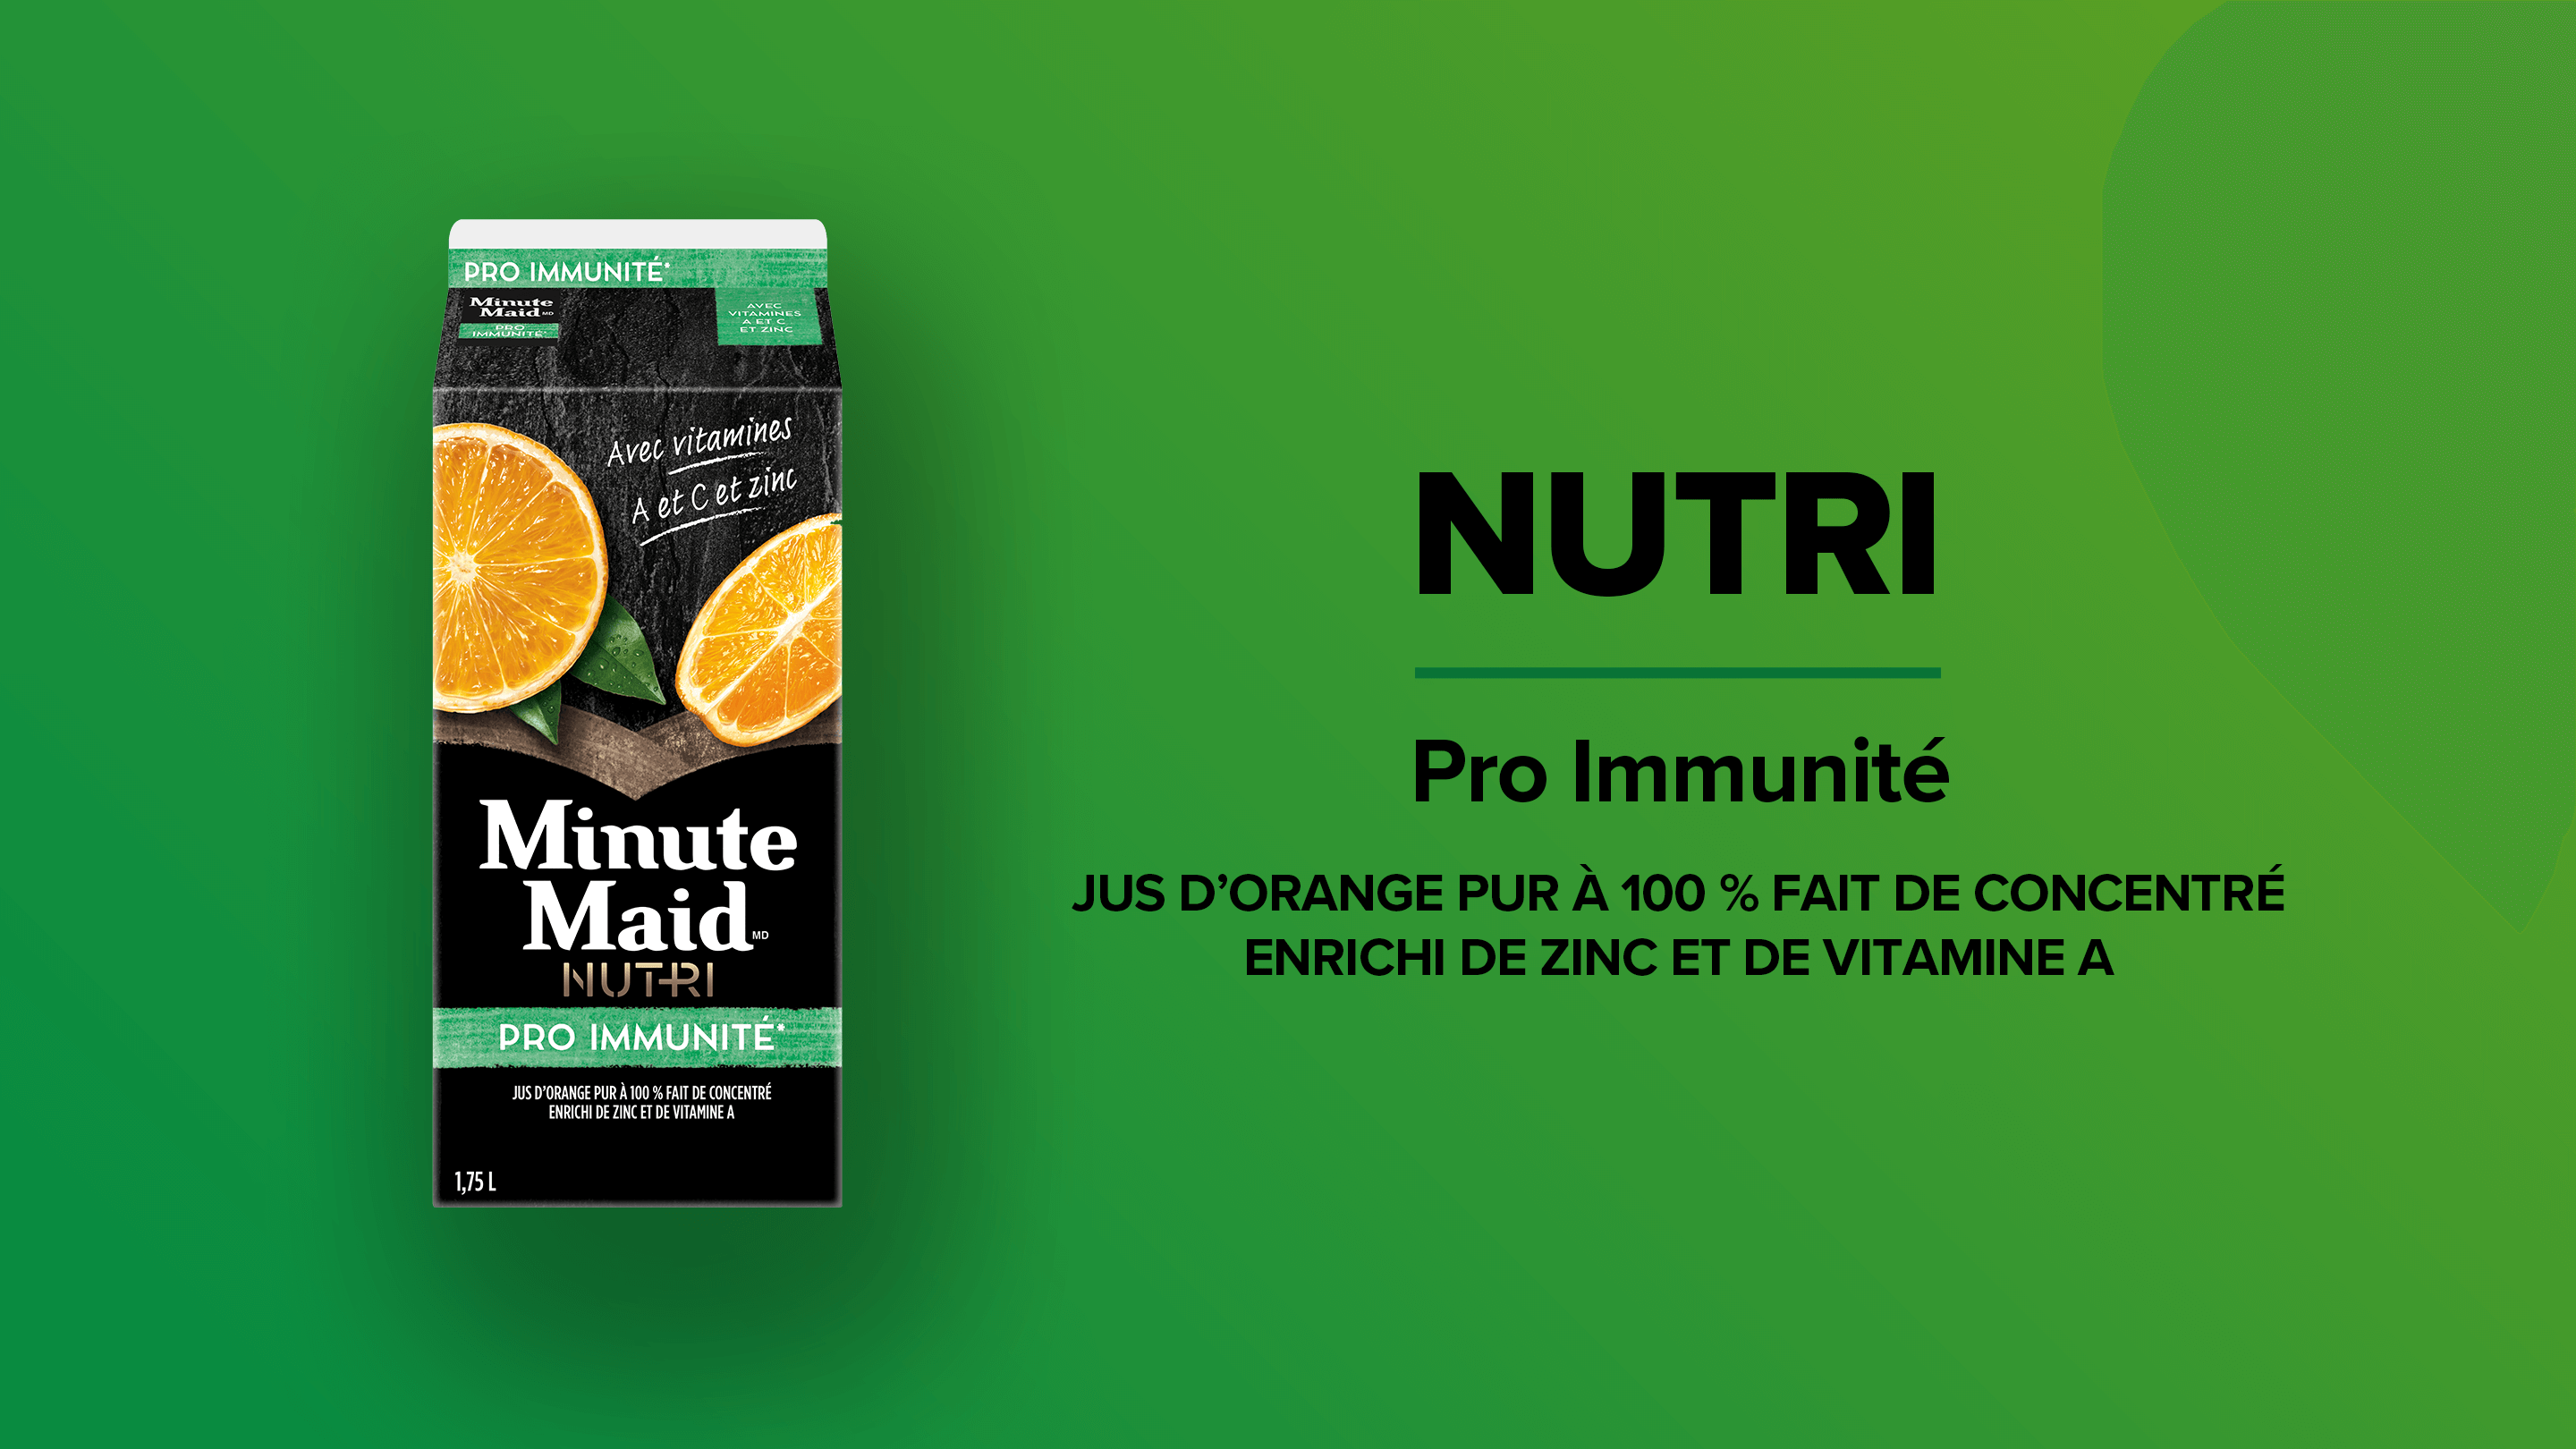 Minute Maid NUTRI. Pro Immunité. Jus d'orange pur à 100 % fait de concentré enrichi de zinc et de vitamine A.